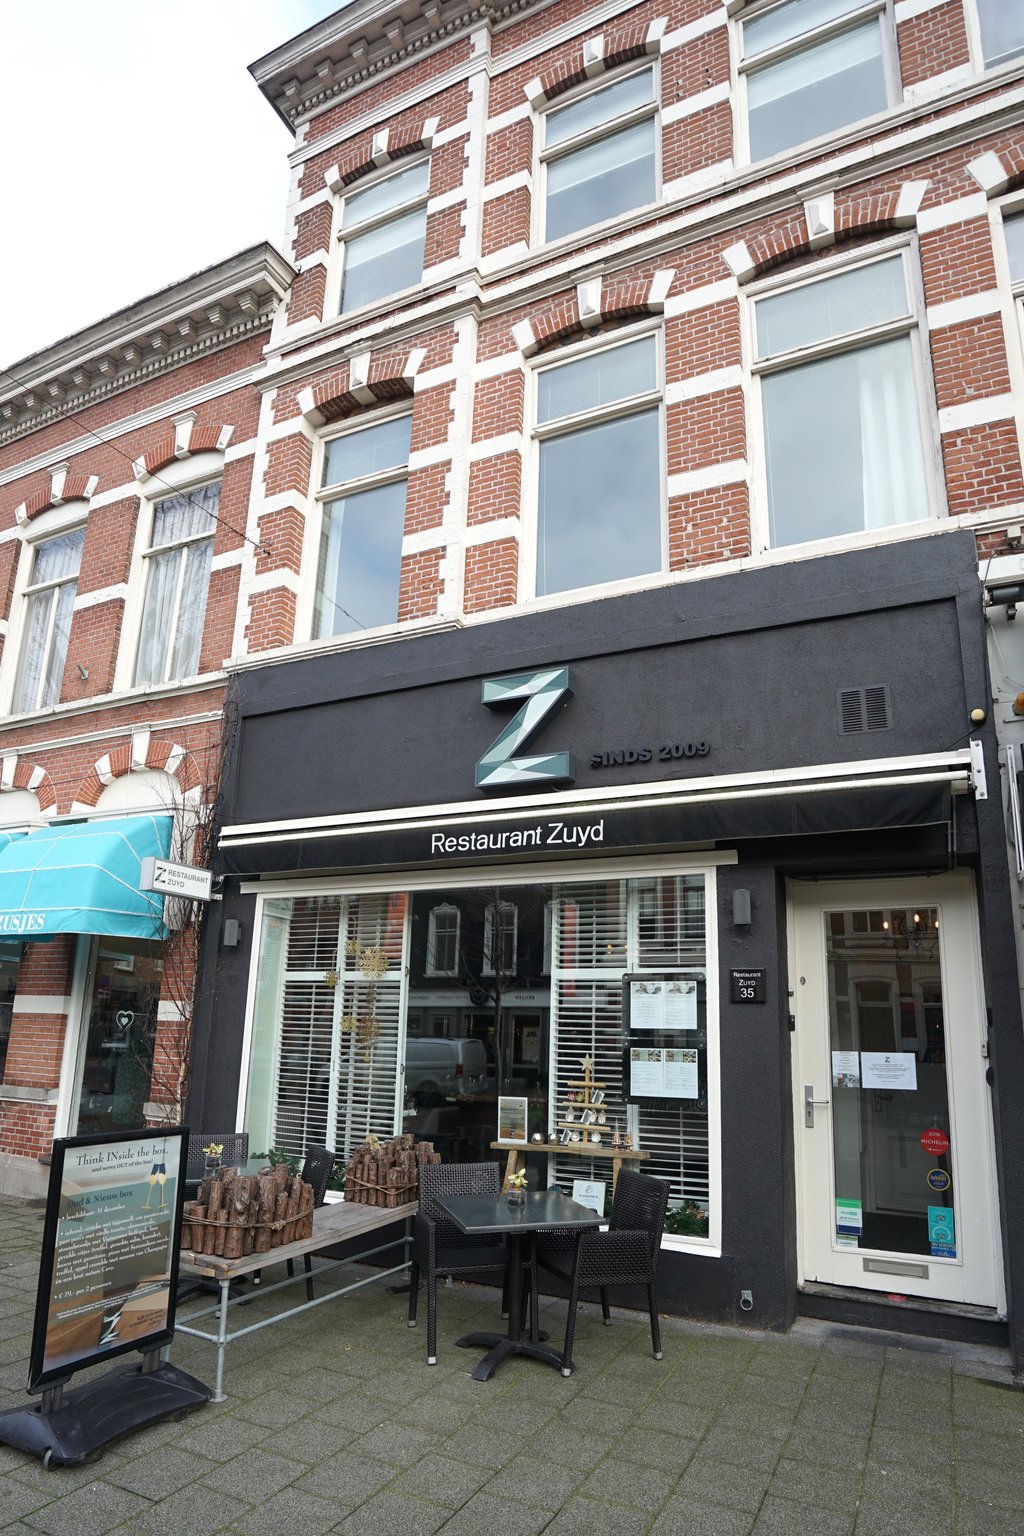 Restaurant Zuyd